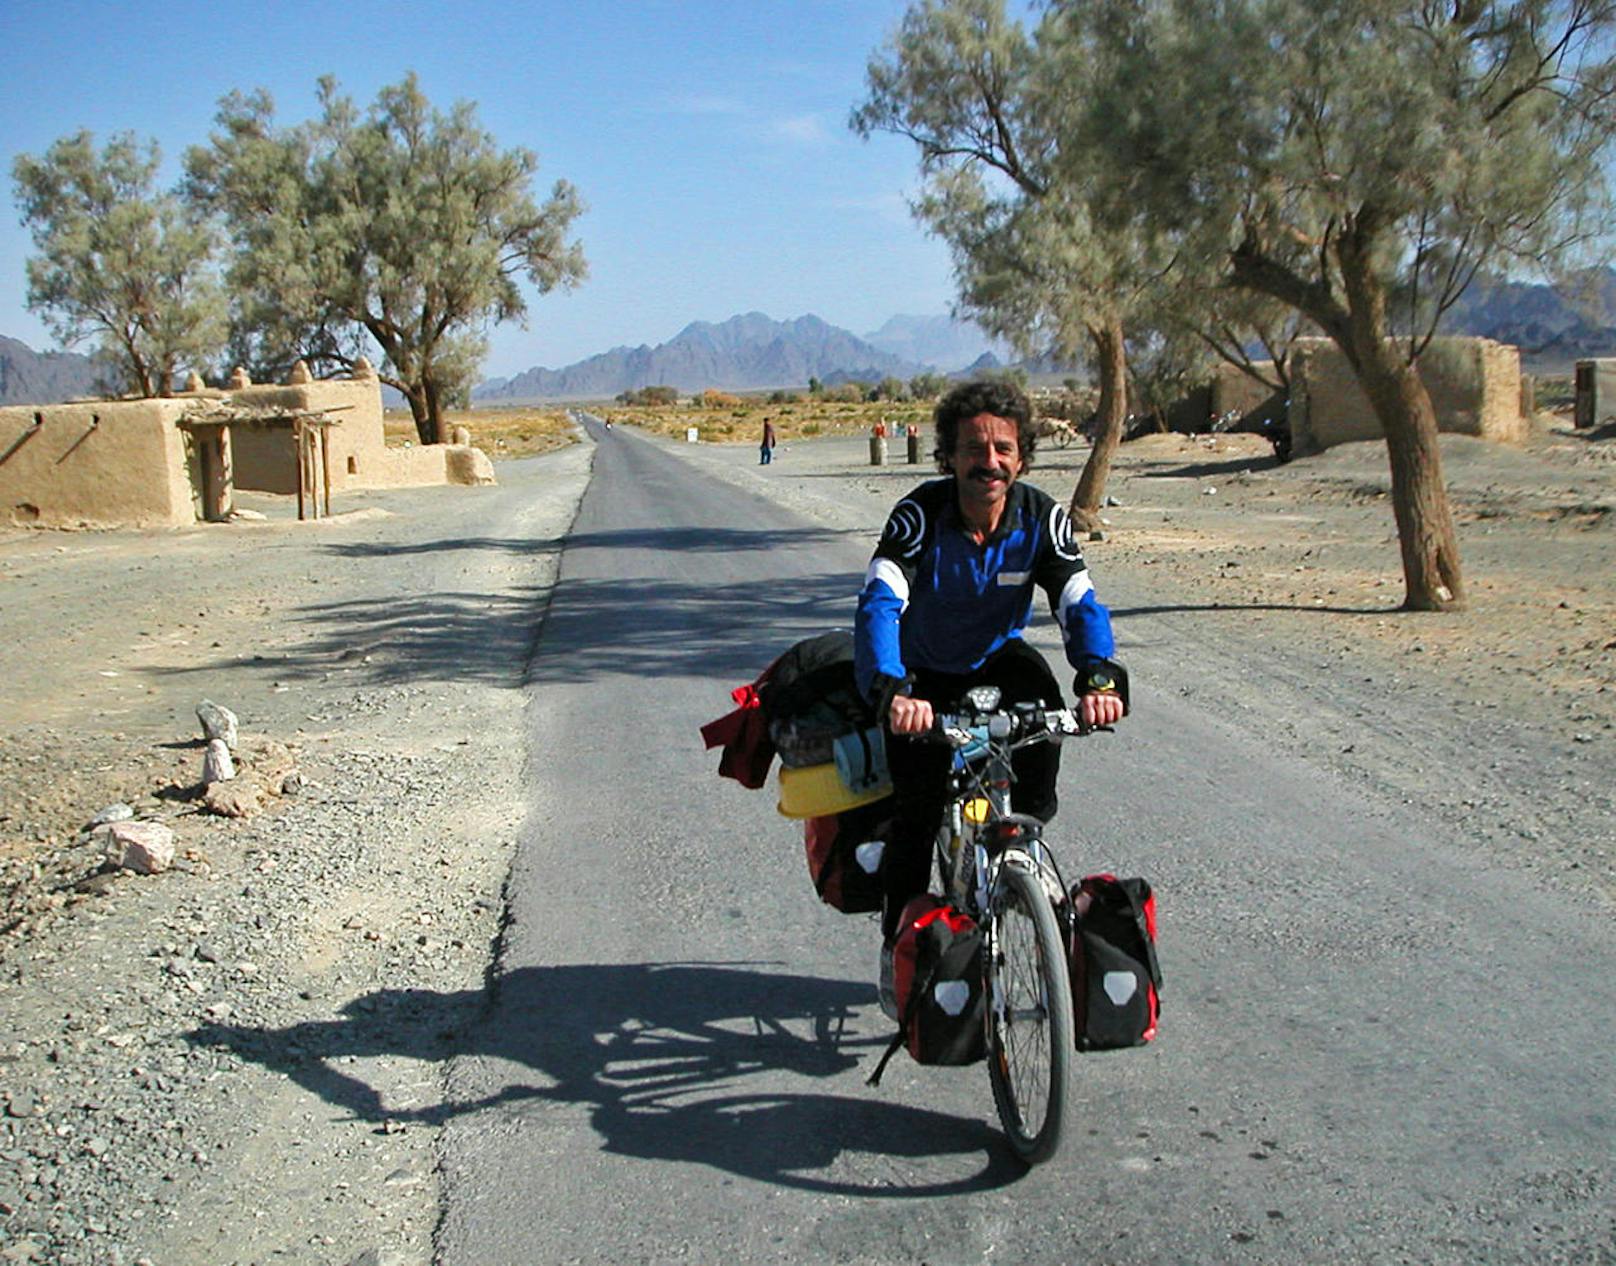 Radtrekking in der Wuste von Belitschistan